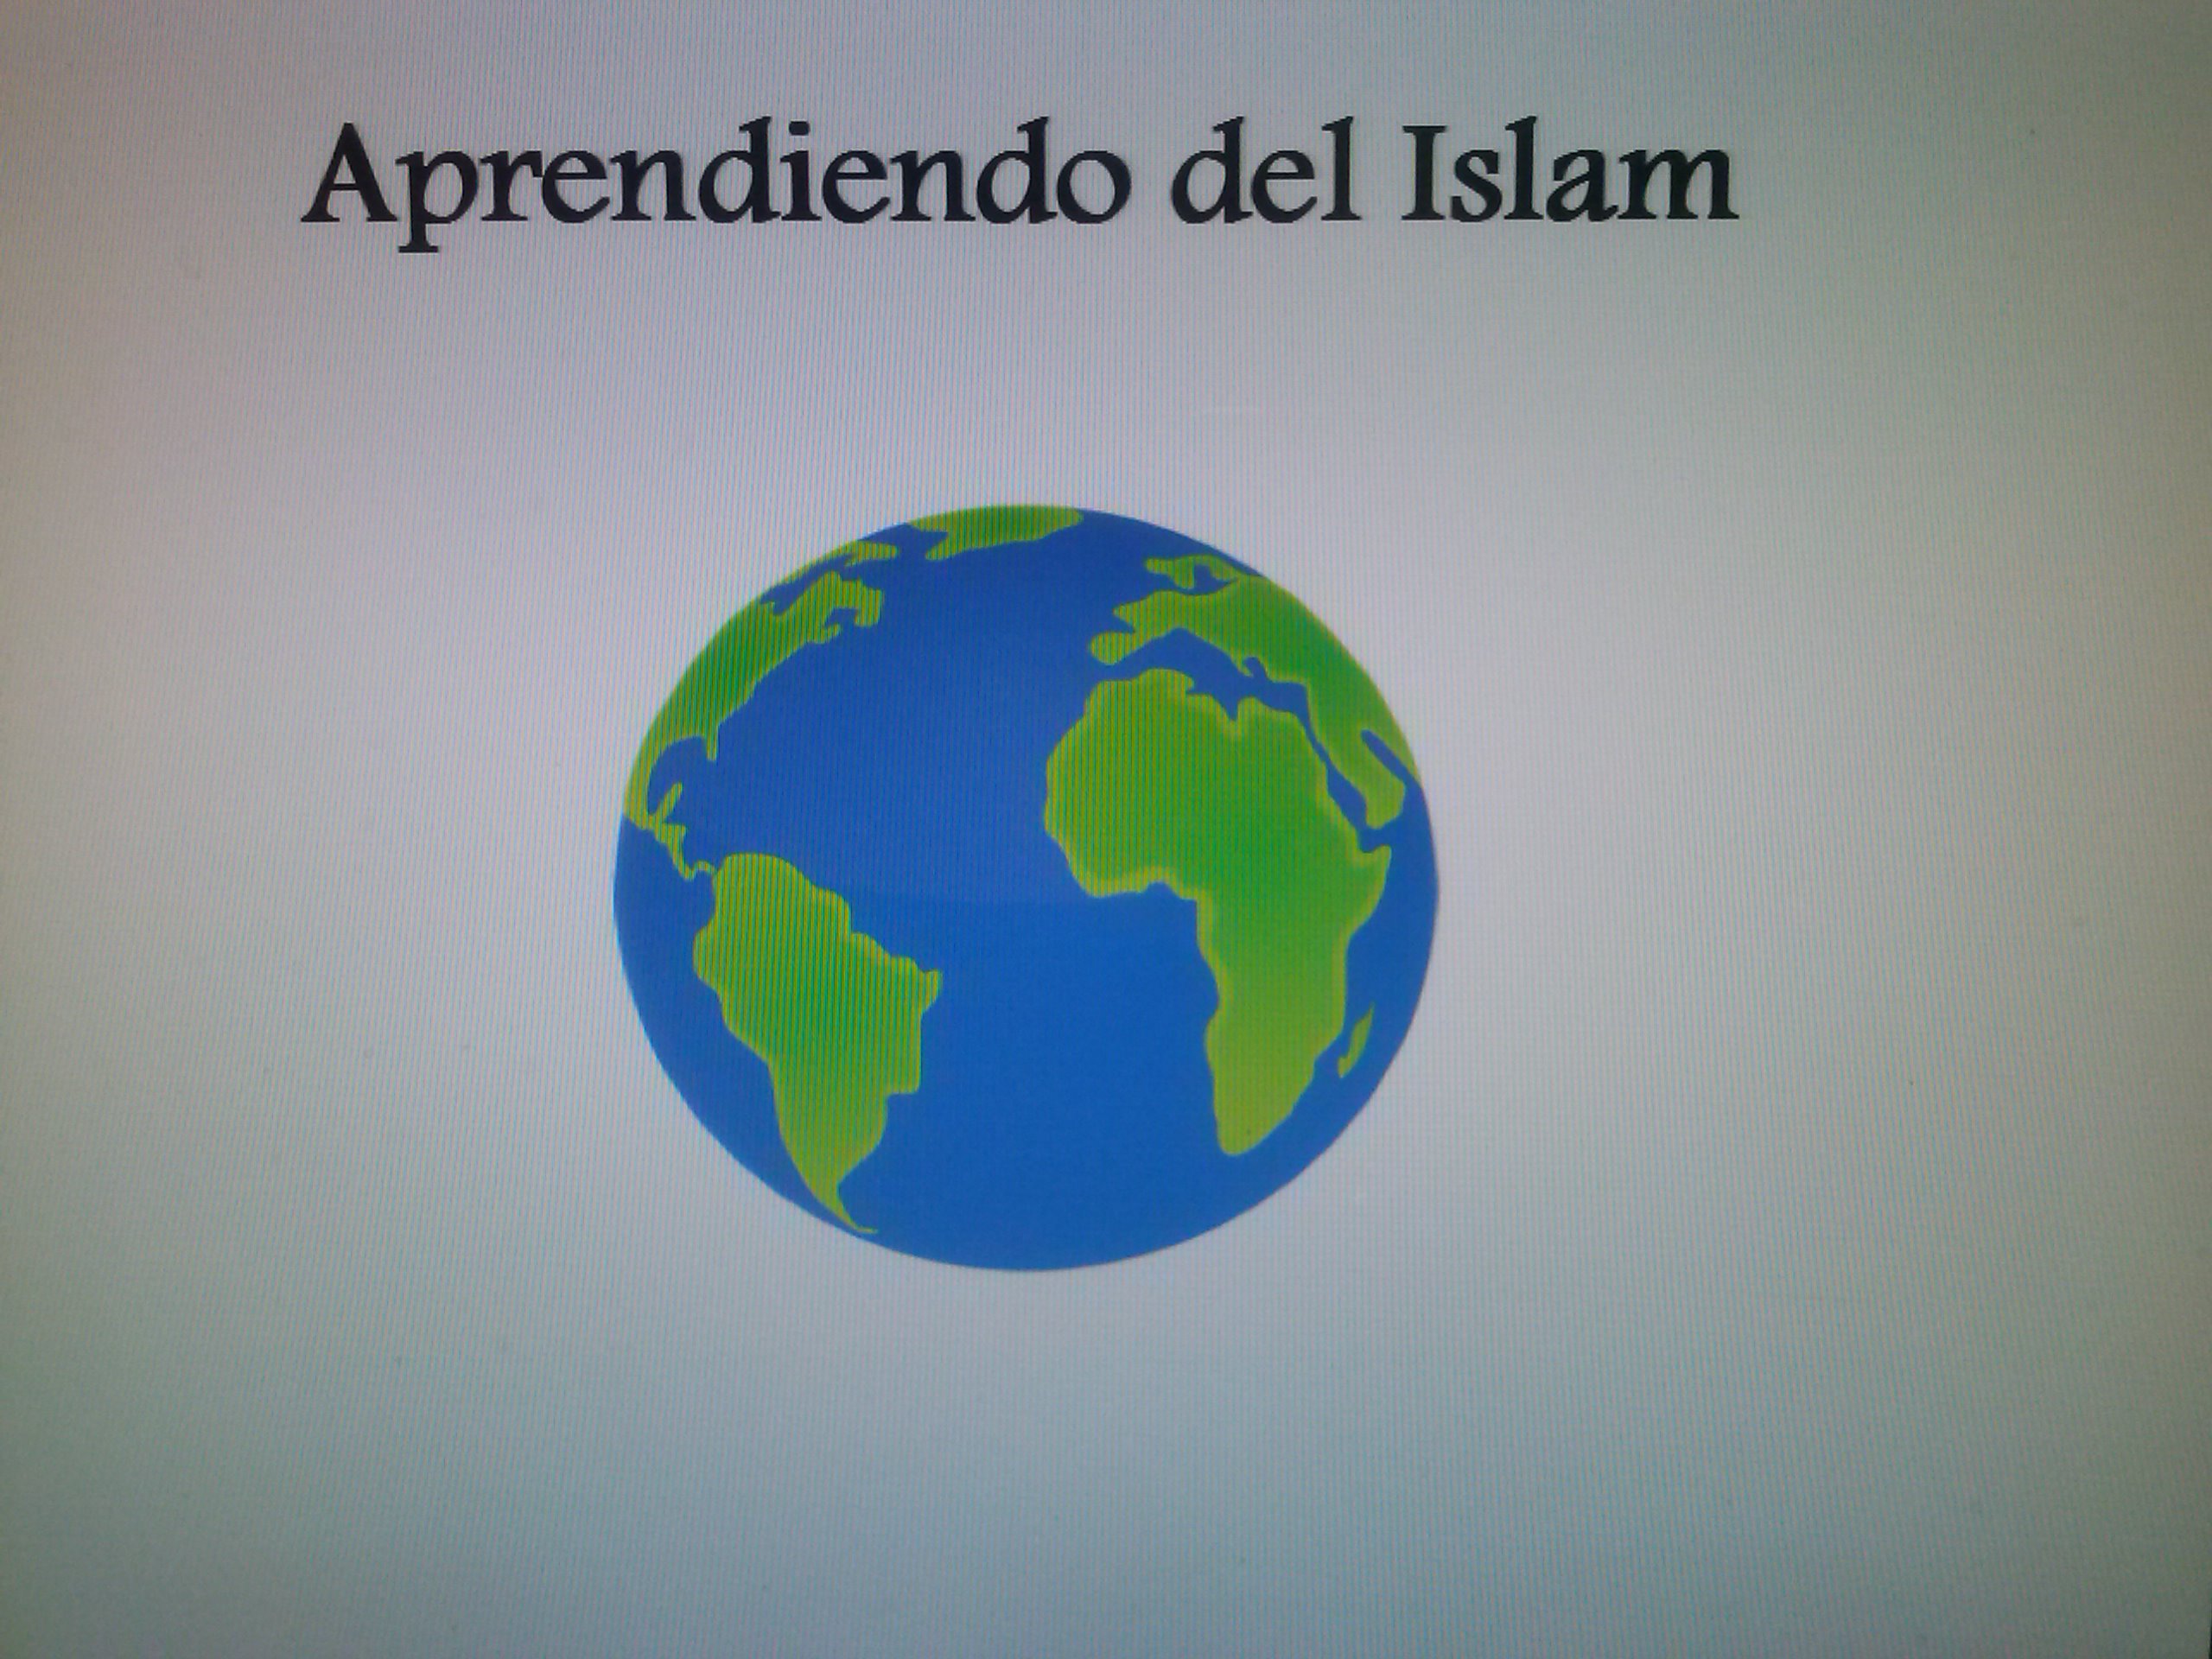 Aprendiendo del Islam